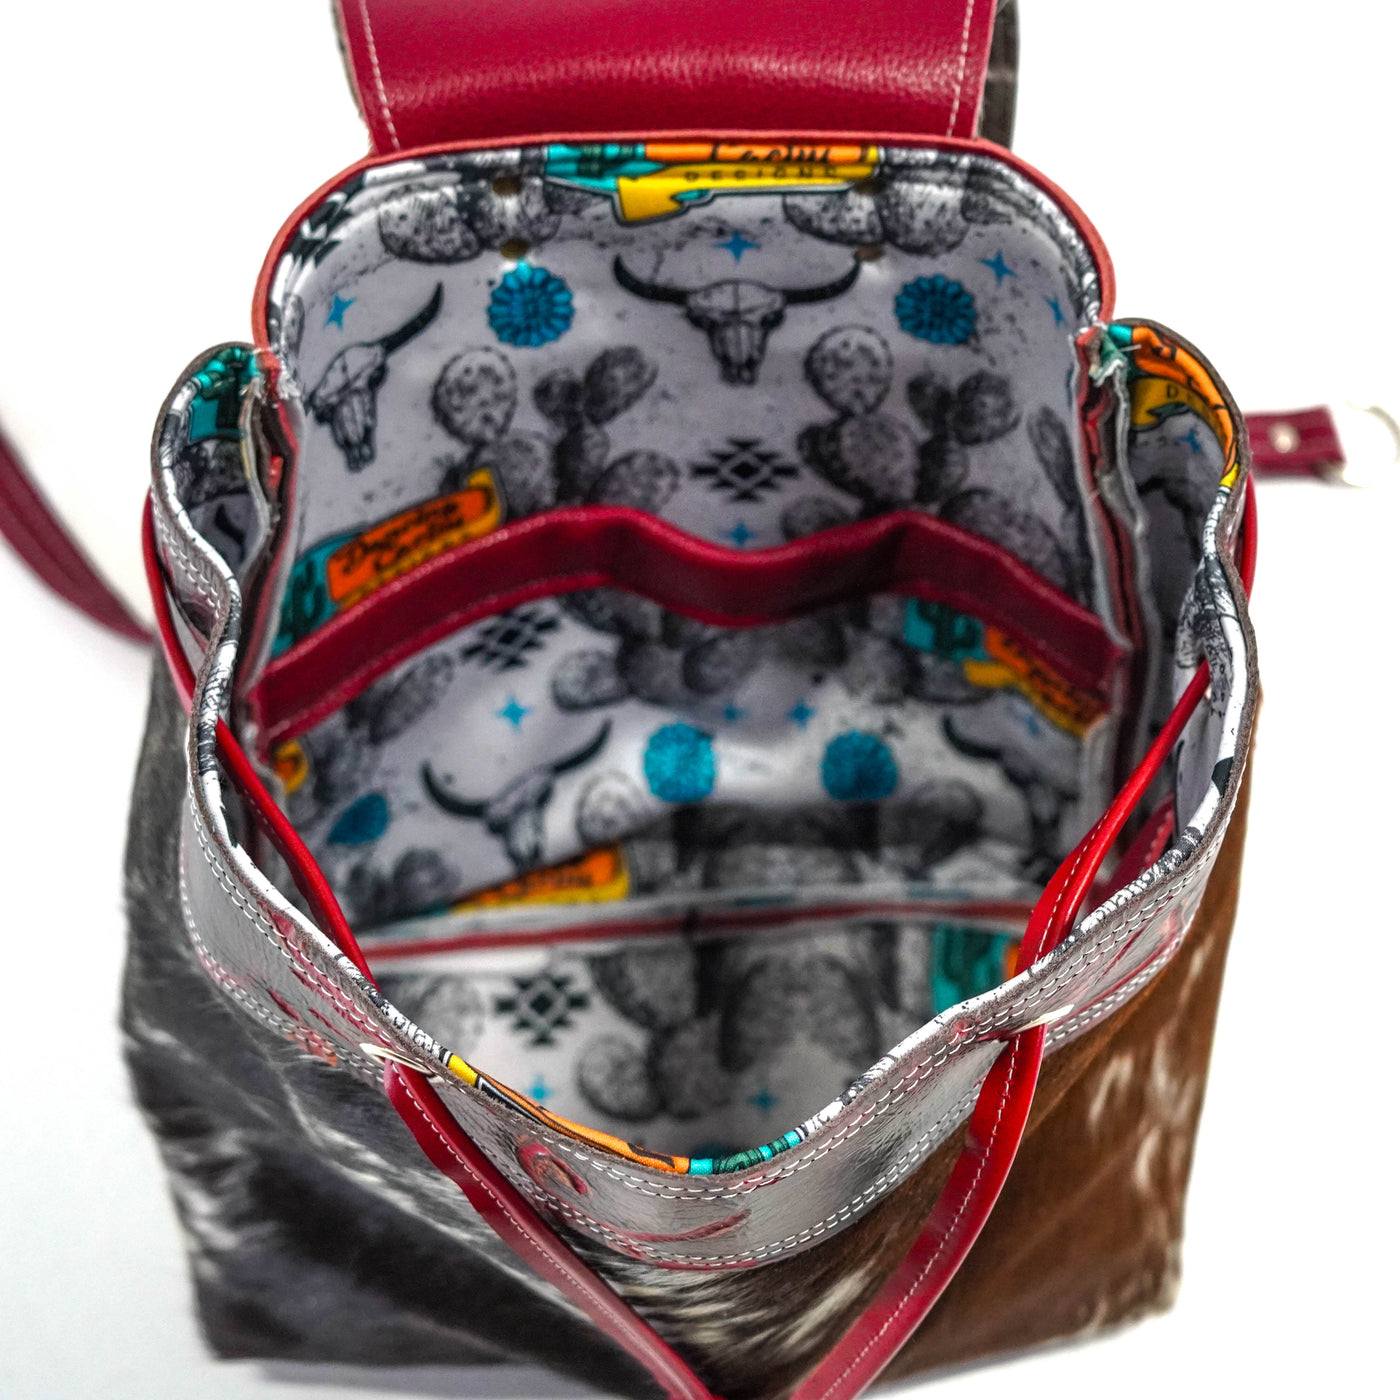 Kelsea Backpack - Longhorn w/ Red Brands-Kelsea Backpack-Western-Cowhide-Bags-Handmade-Products-Gifts-Dancing Cactus Designs